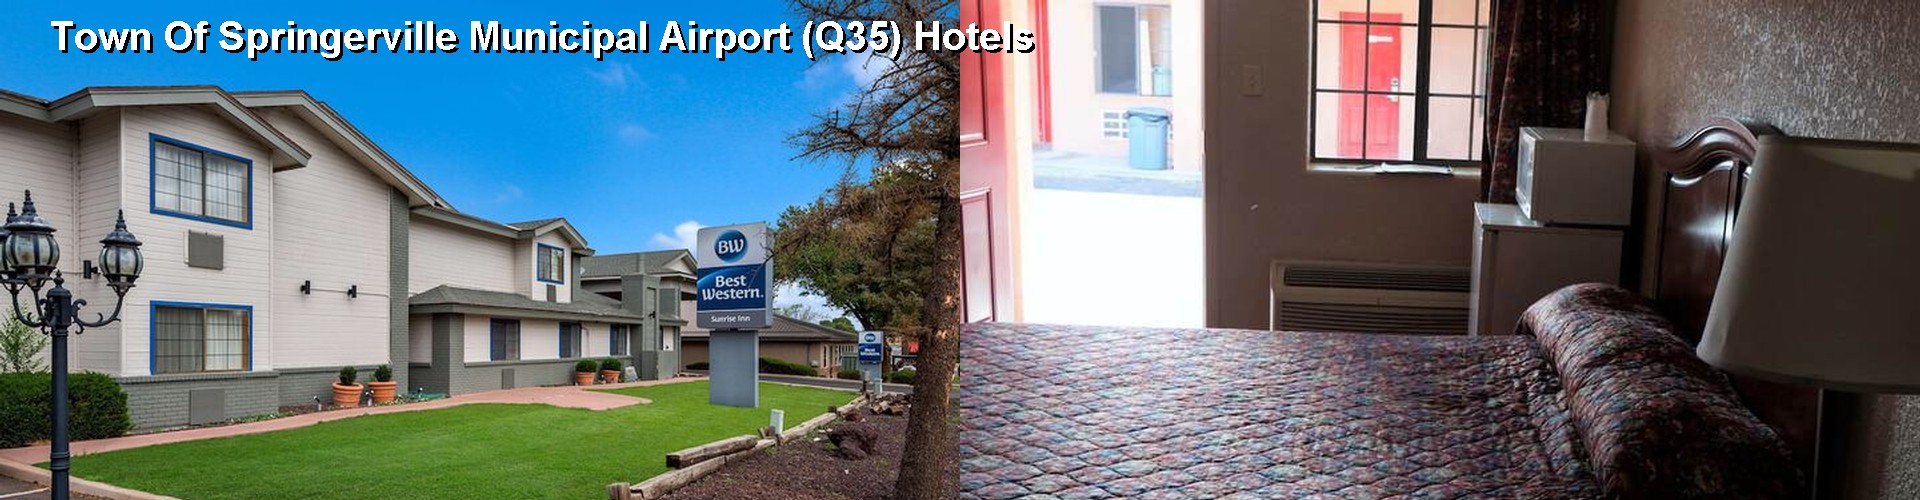 1 Best Hotels near Town Of Springerville Municipal Airport (Q35)